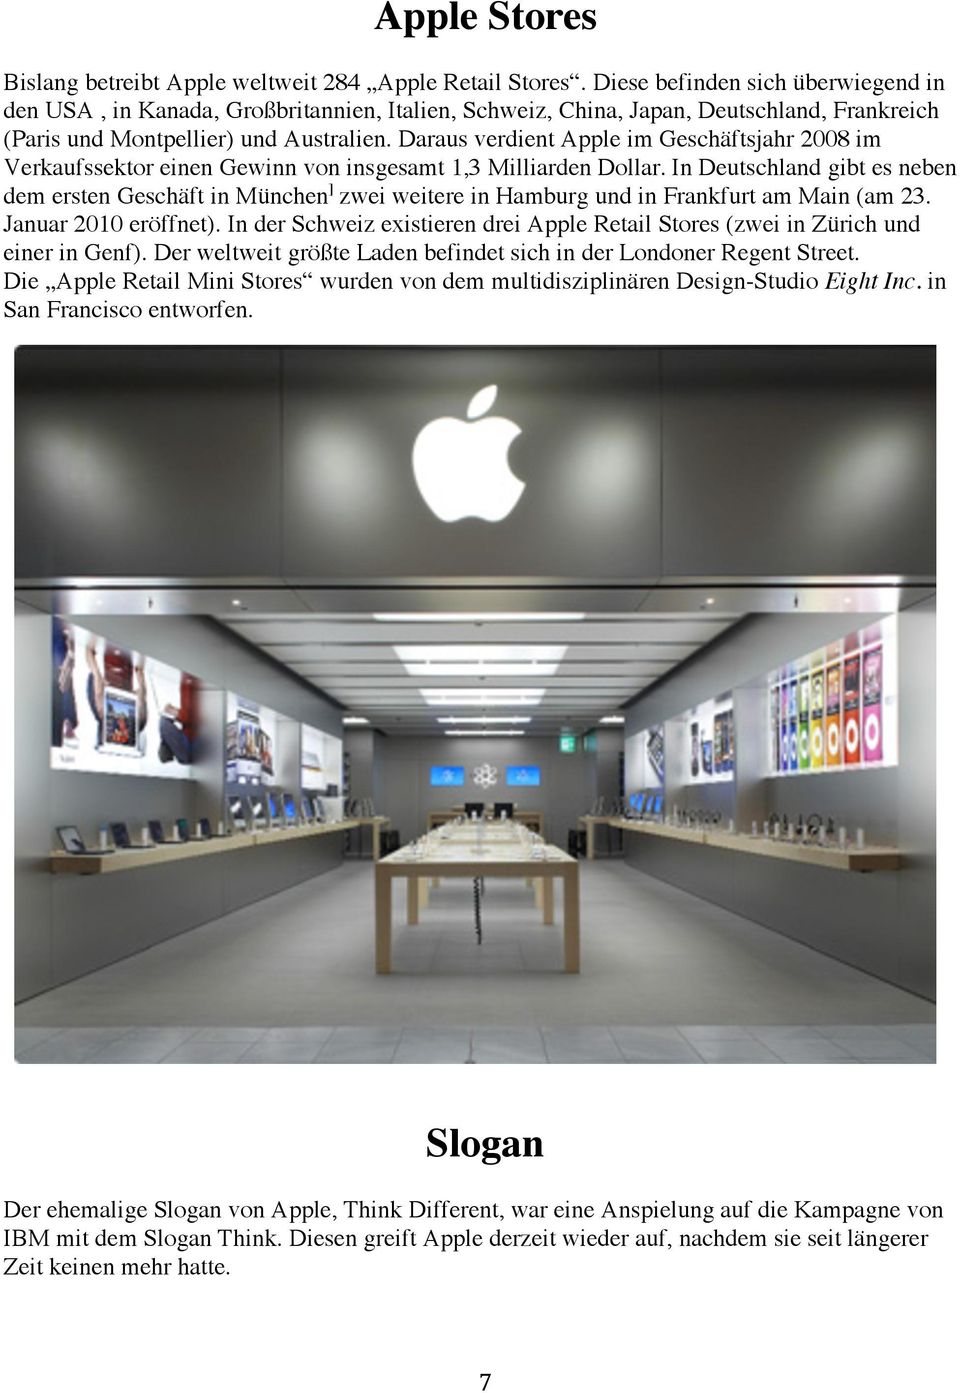 Daraus verdient Apple im Geschäftsjahr 2008 im Verkaufssektor einen Gewinn von insgesamt 1,3 Milliarden Dollar.